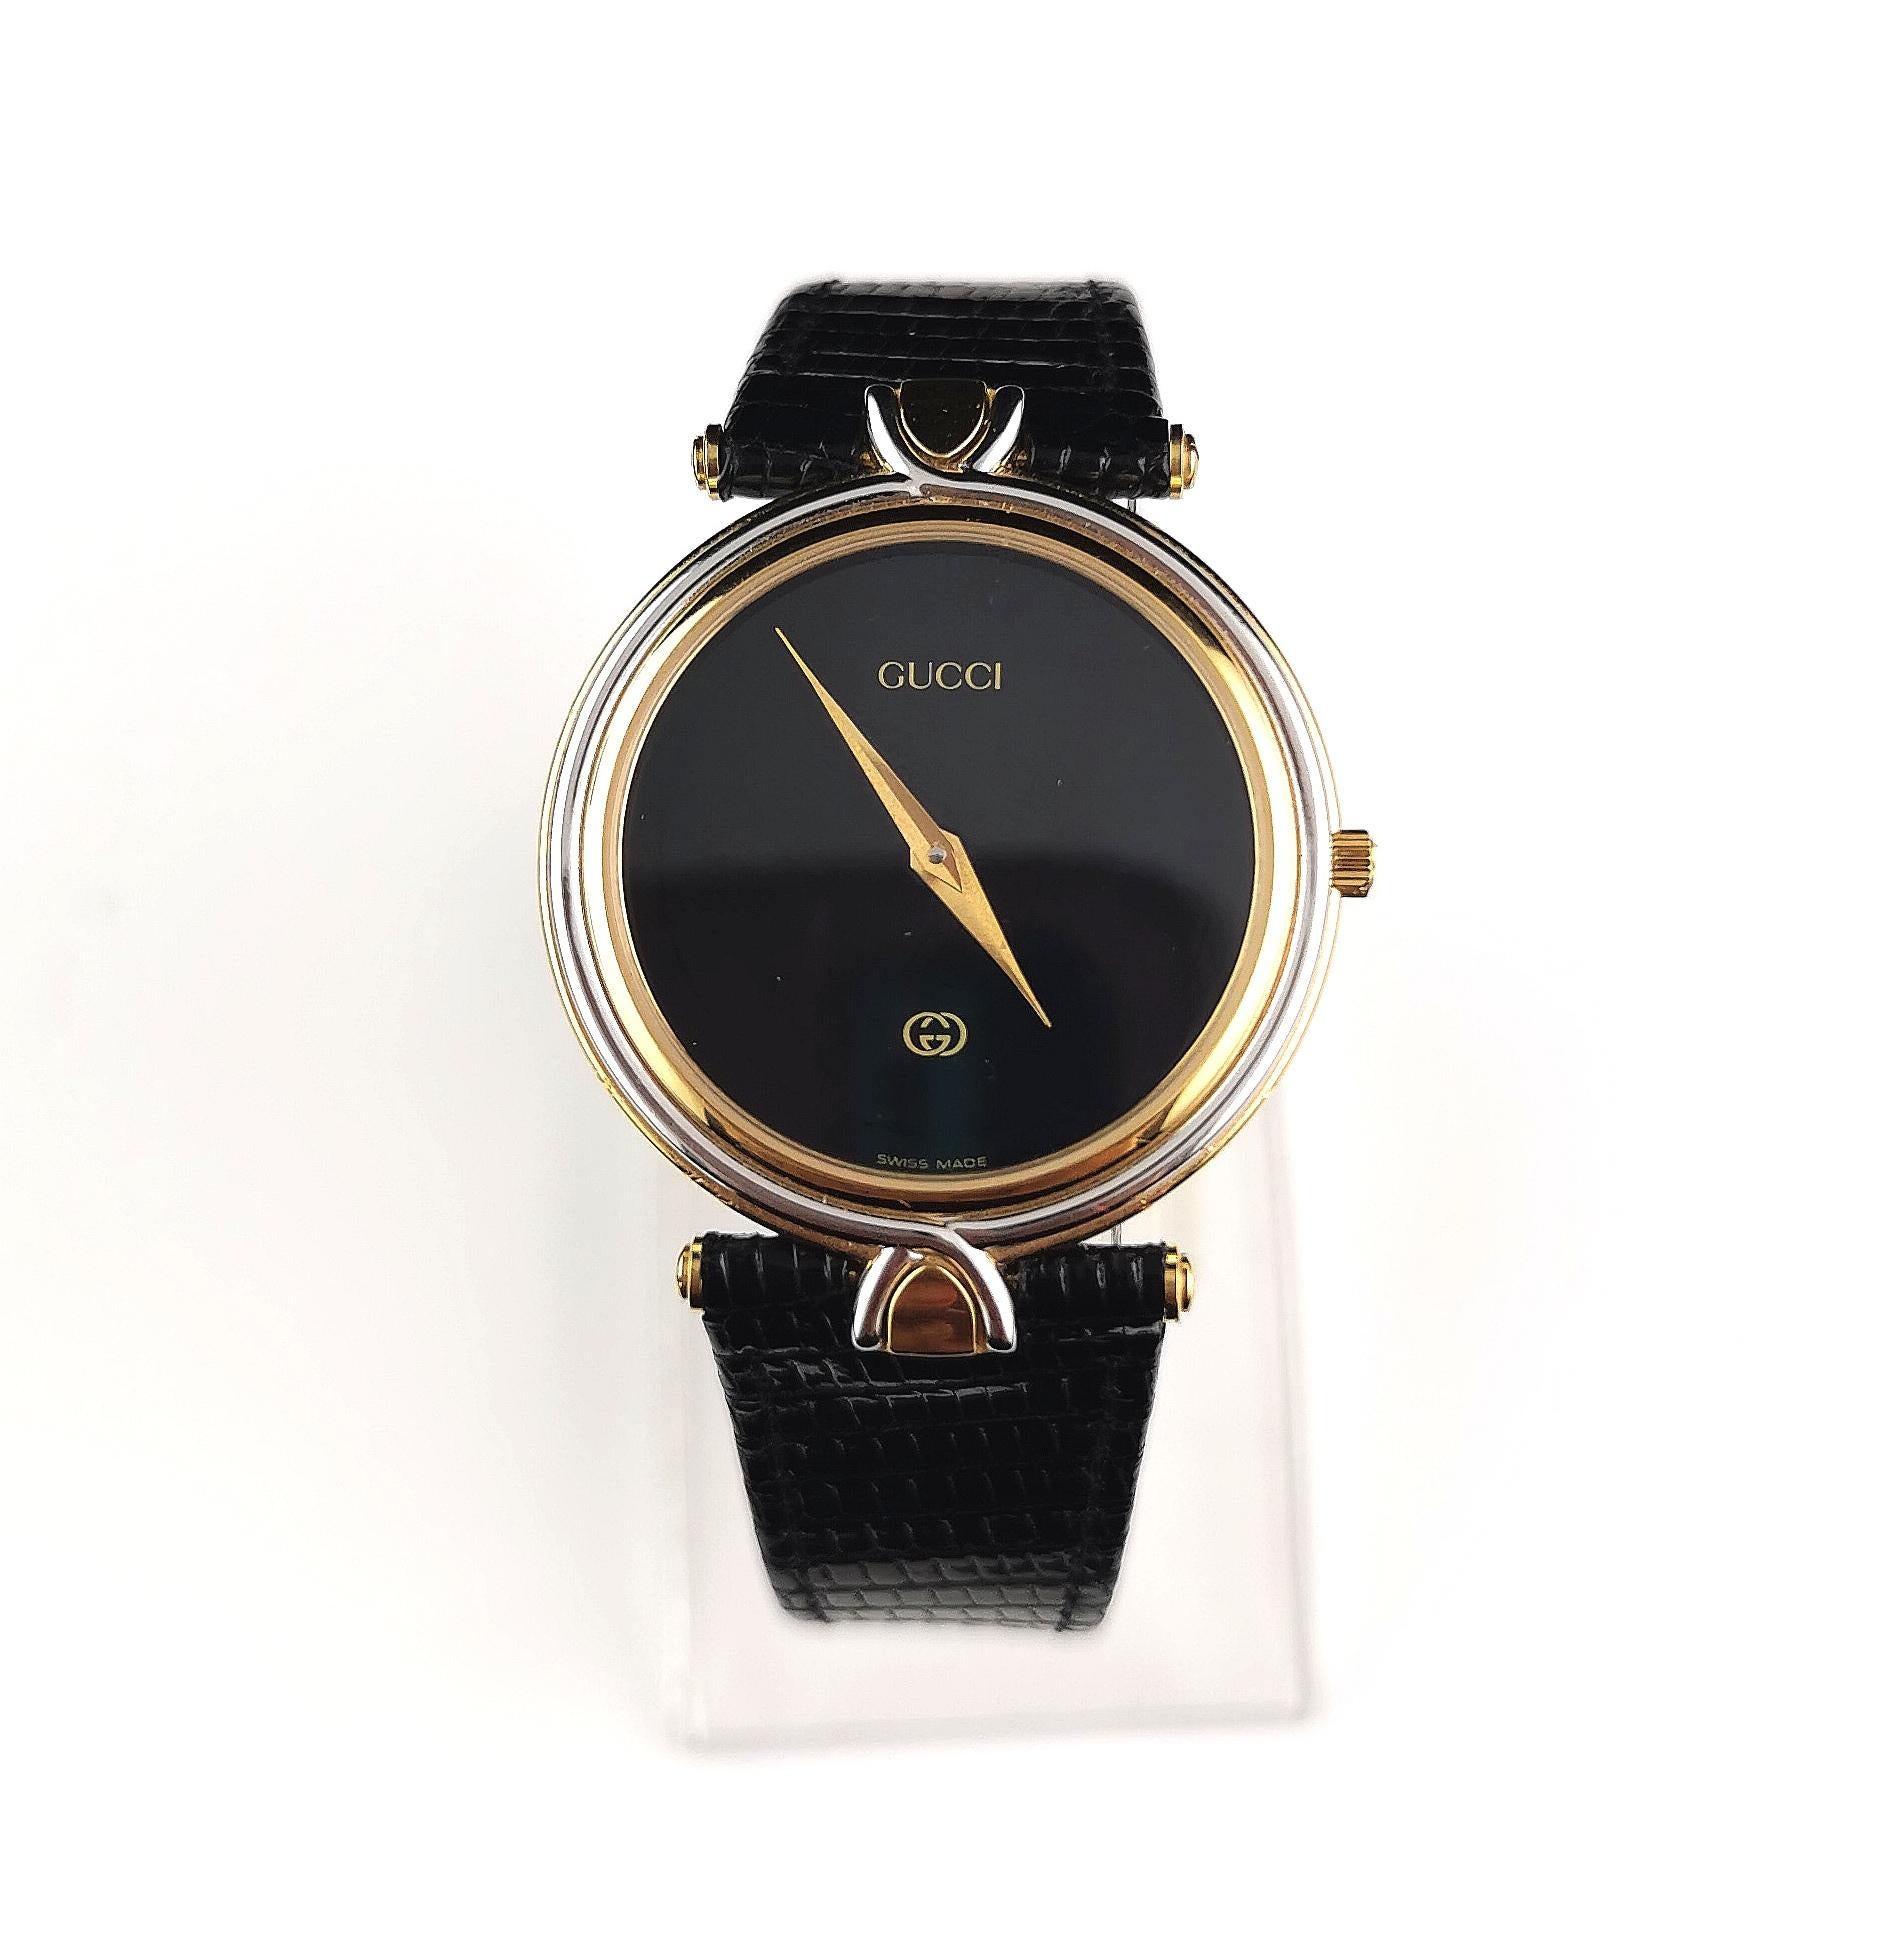 Une élégante montre-bracelet Gucci 4500M en acier inoxydable et plaqué or.

Il s'agit d'une montre à bracelet appartenant à l'origine à la gamme des montres pour hommes, mais elle conviendra aussi bien aux hommes qu'aux femmes. Elle présente un